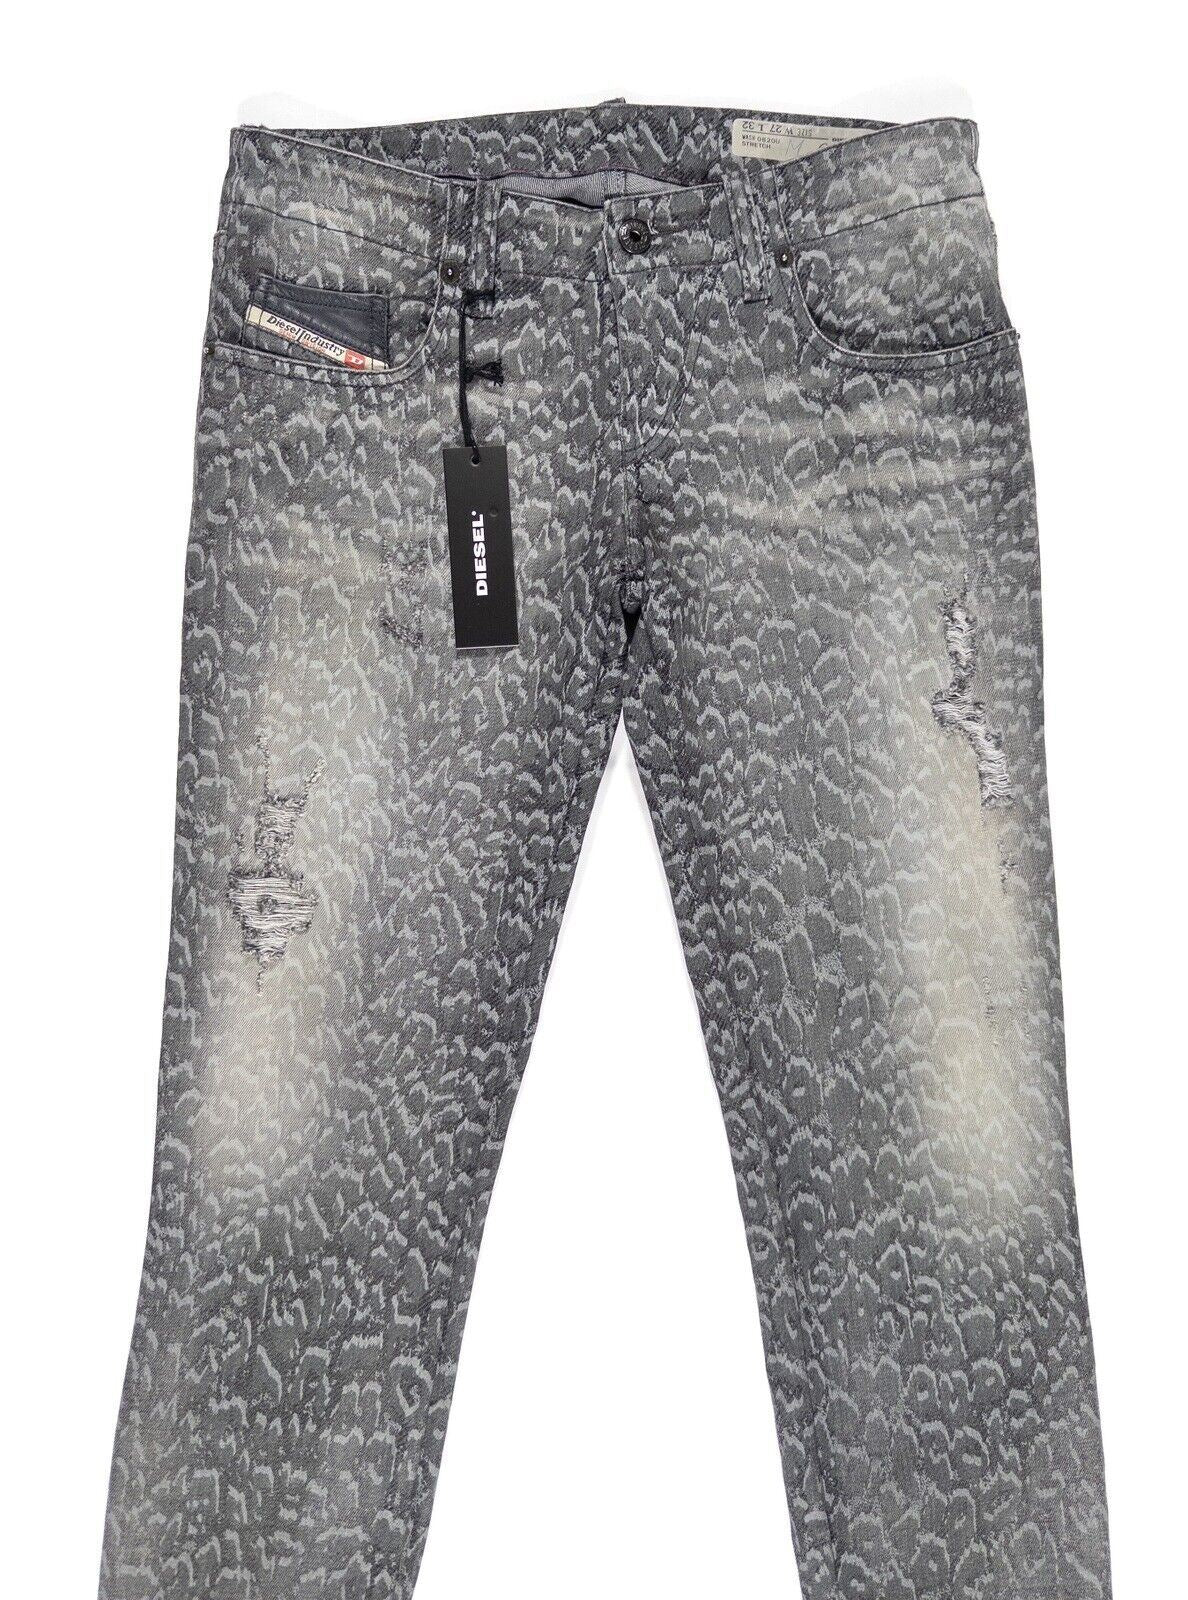 DIESEL Women's Animal Print Jeans Skinny Stretch Grey Size UK W27 L32